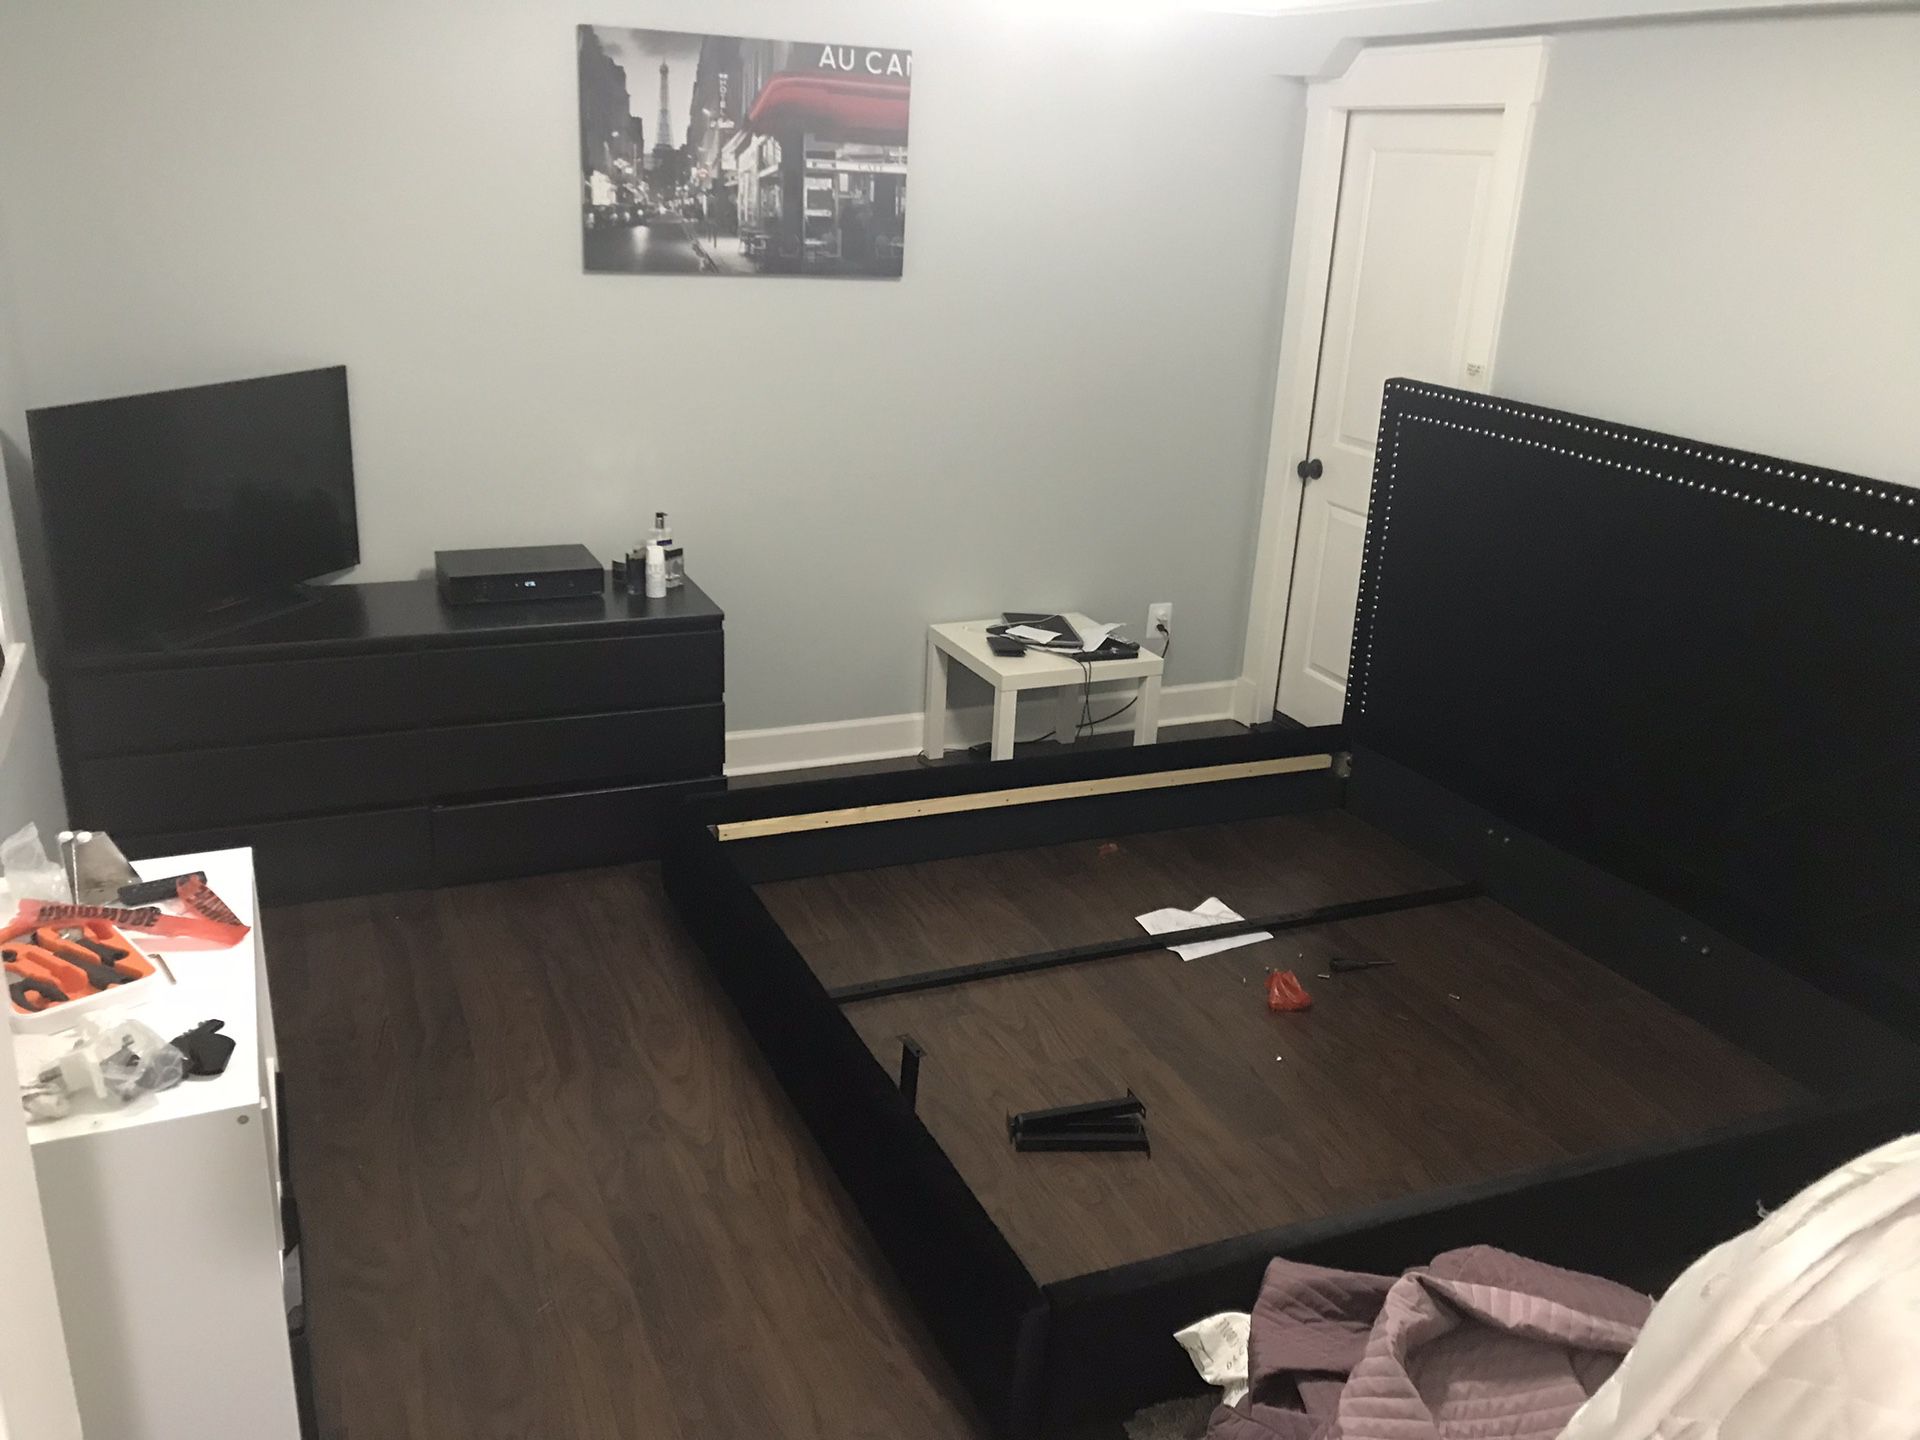 Blackwood dresser and King Bed for sale